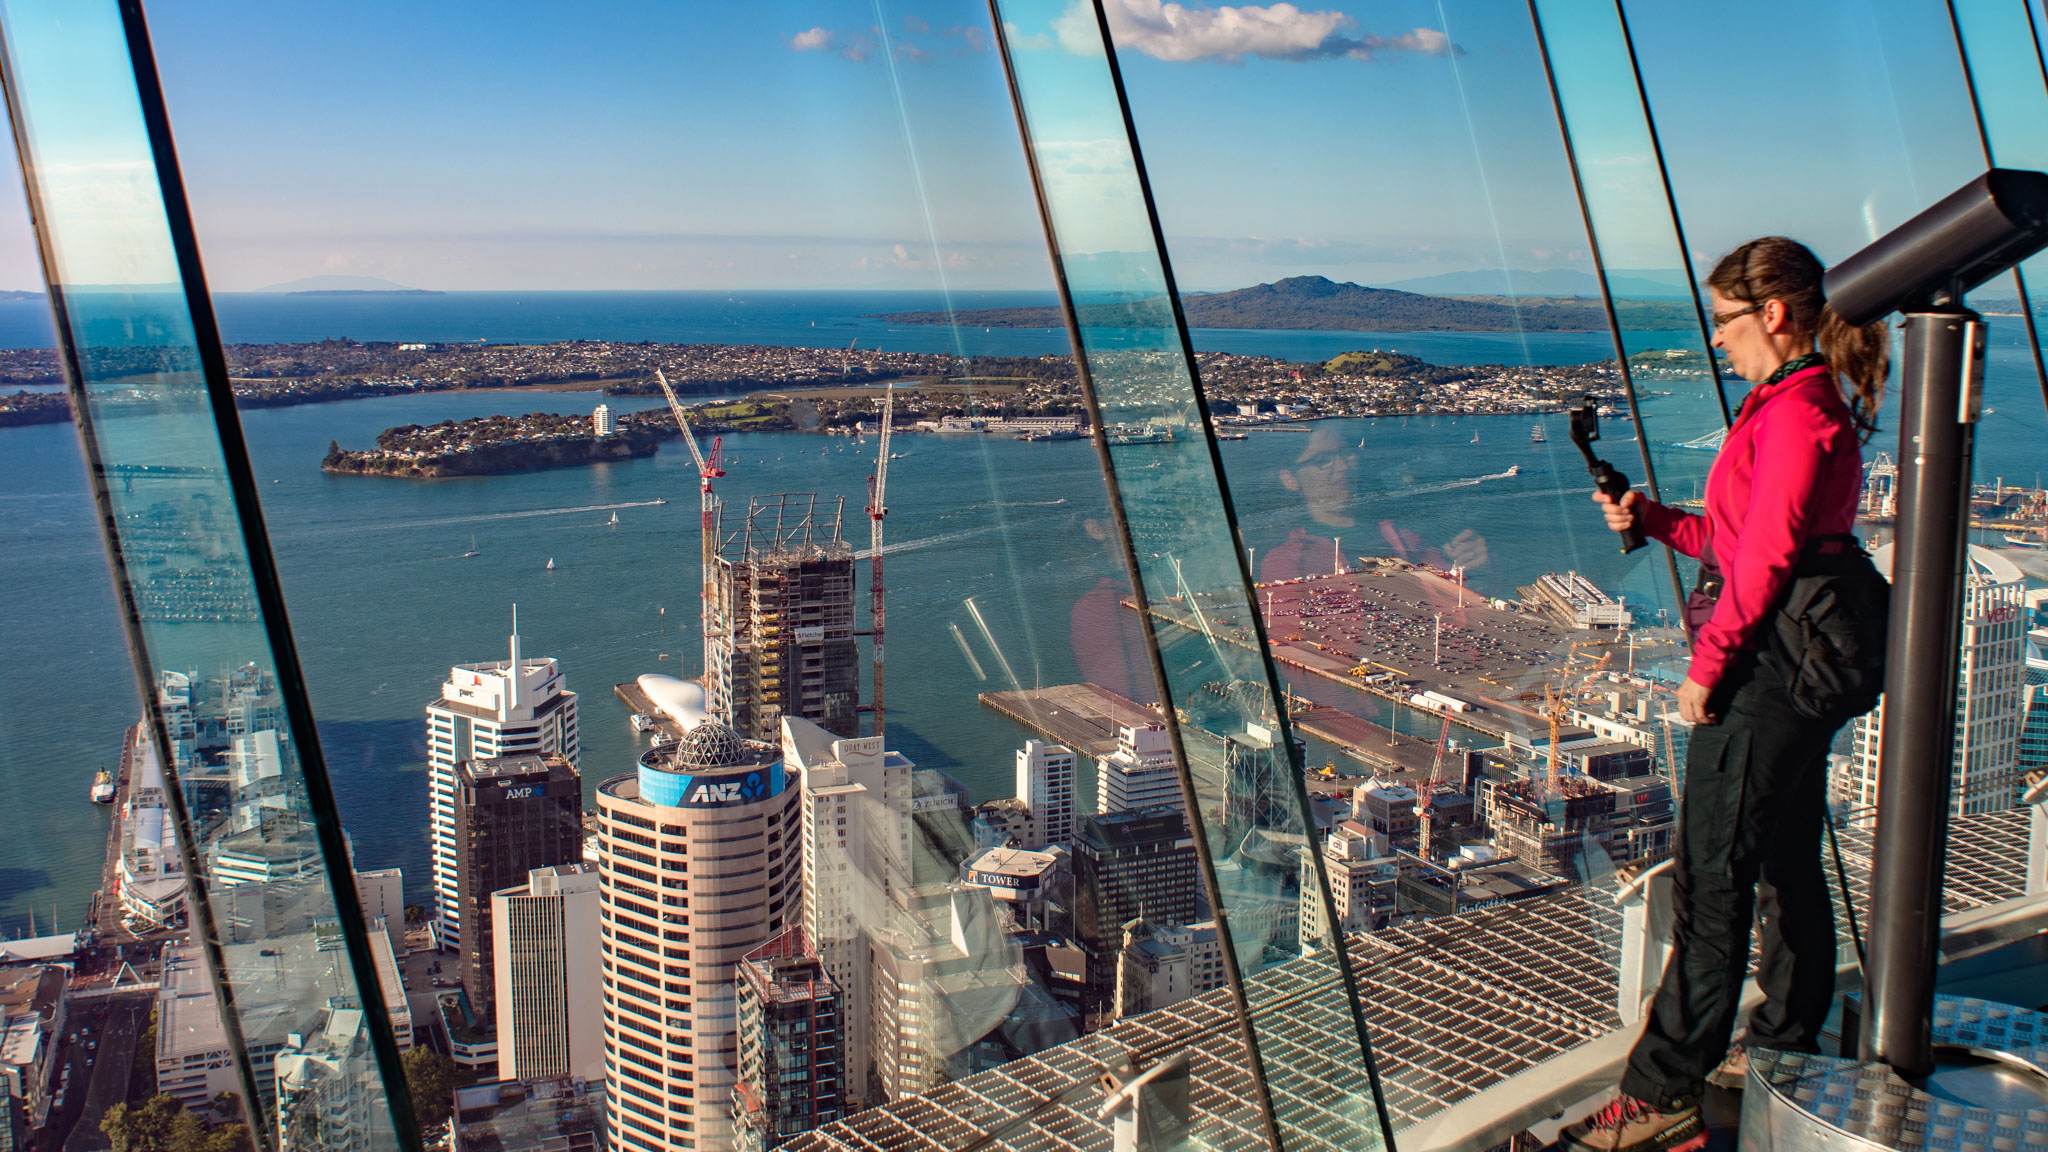 Mia filmt vom Sky Tower in Auckland über Auckland und den Naturhafen